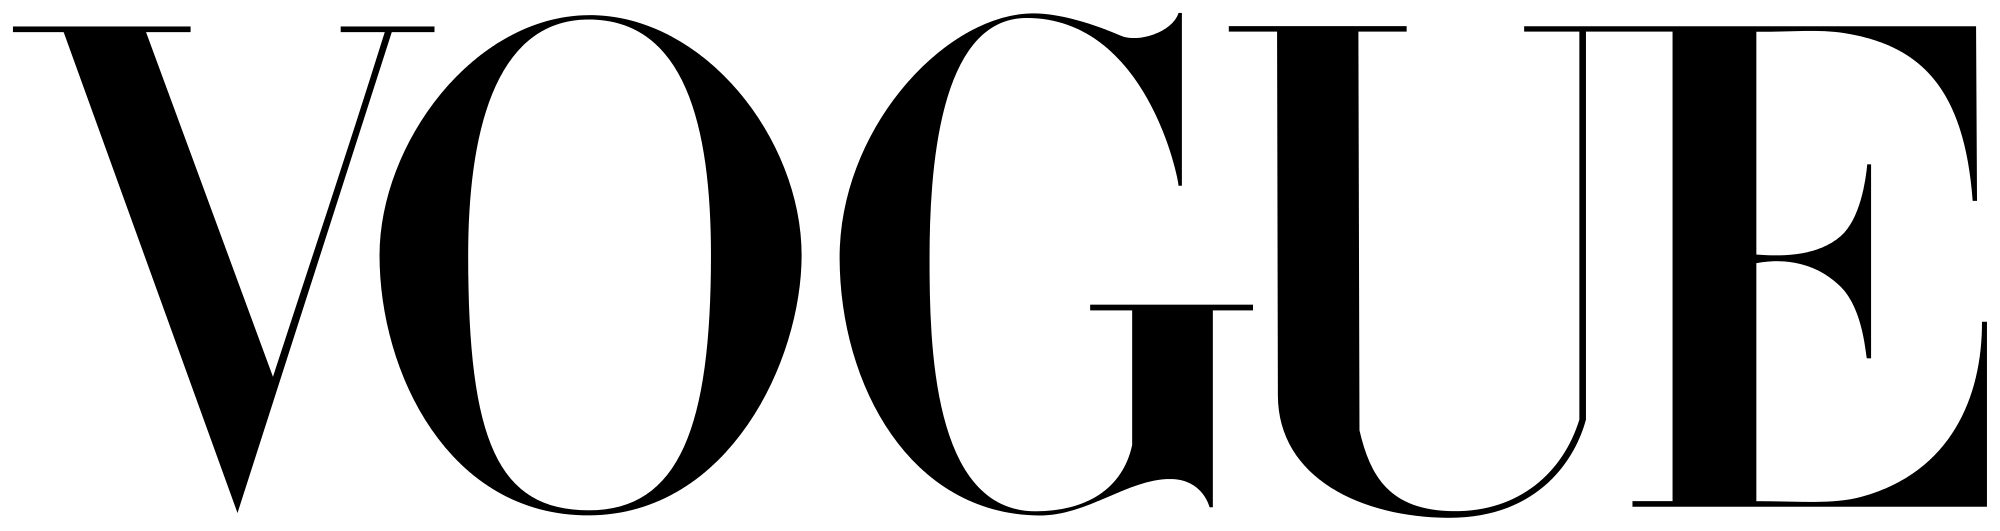 svg lvmh logo